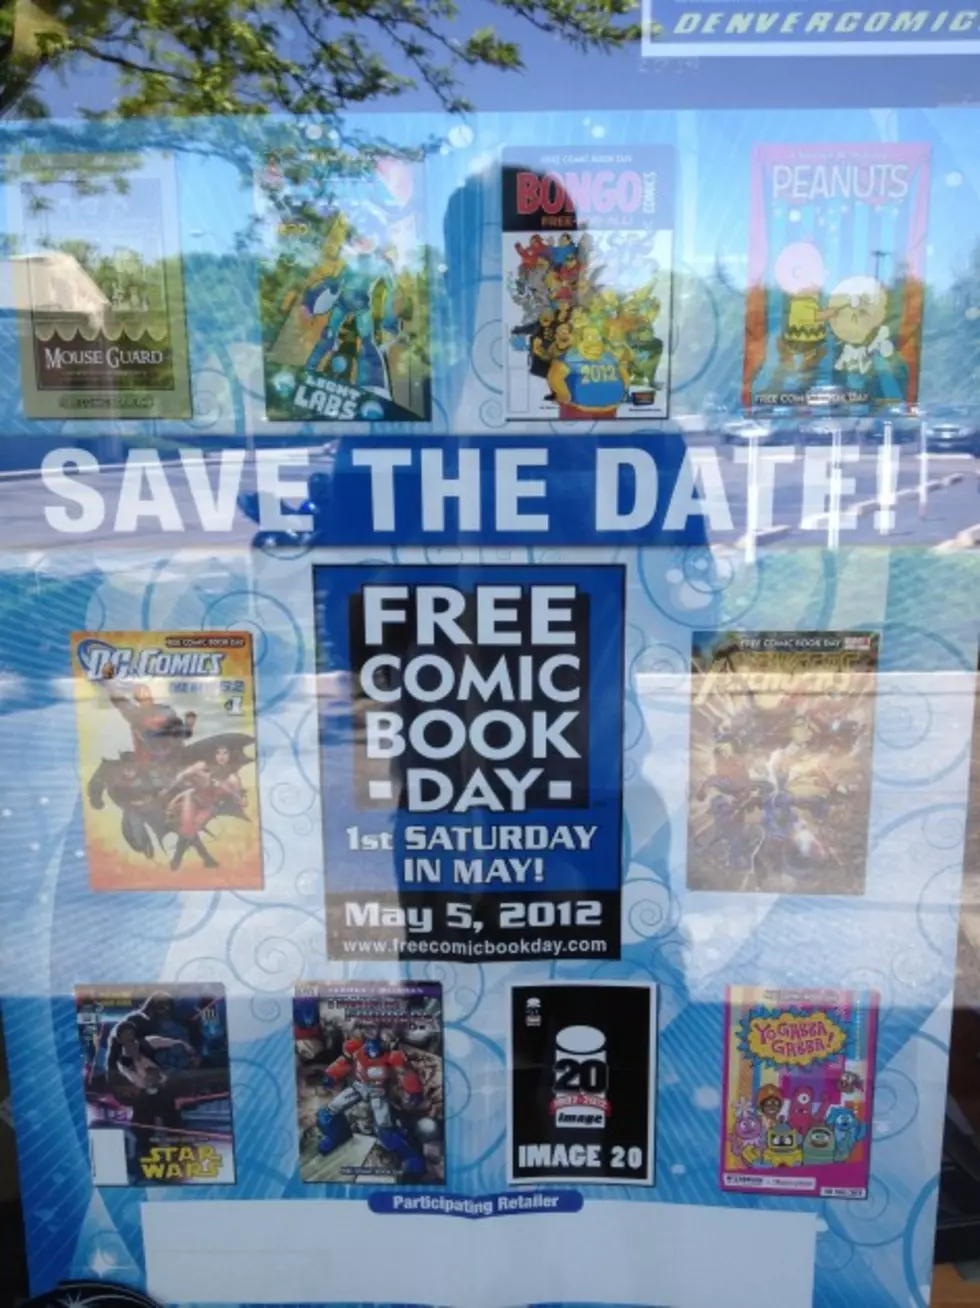 Free Comic Book Day Tomorrow!